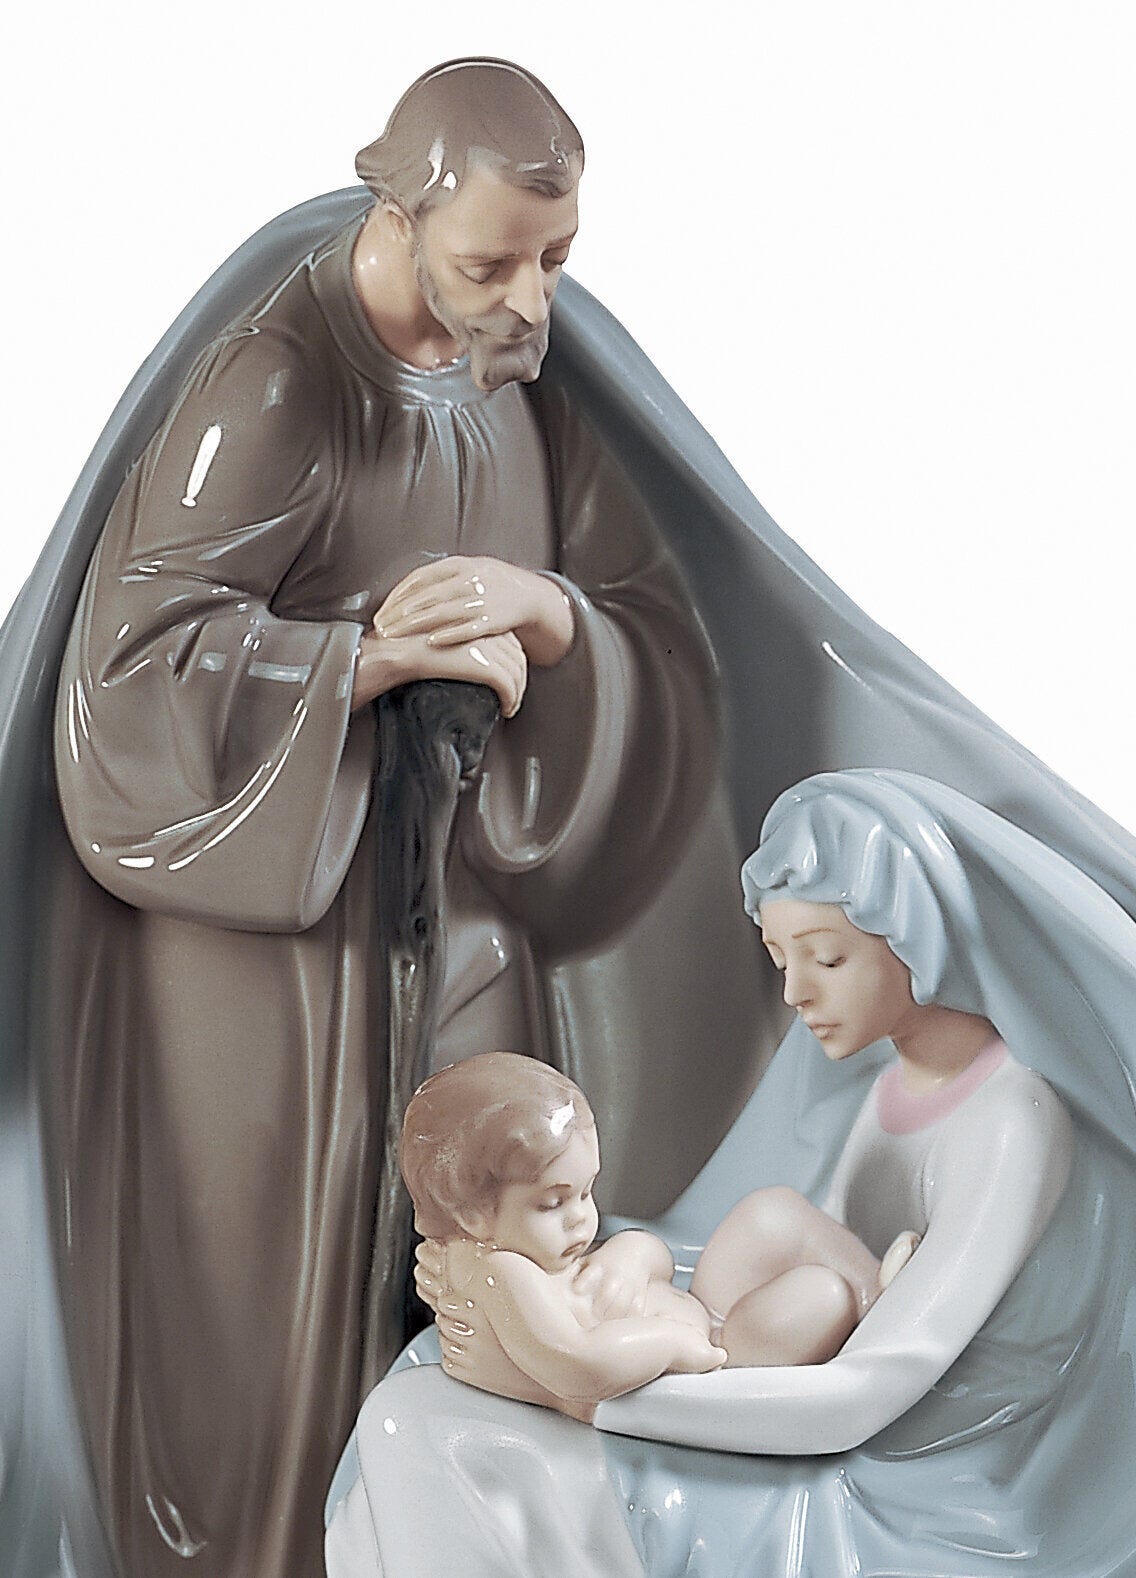 Birth of Jesus Figurine